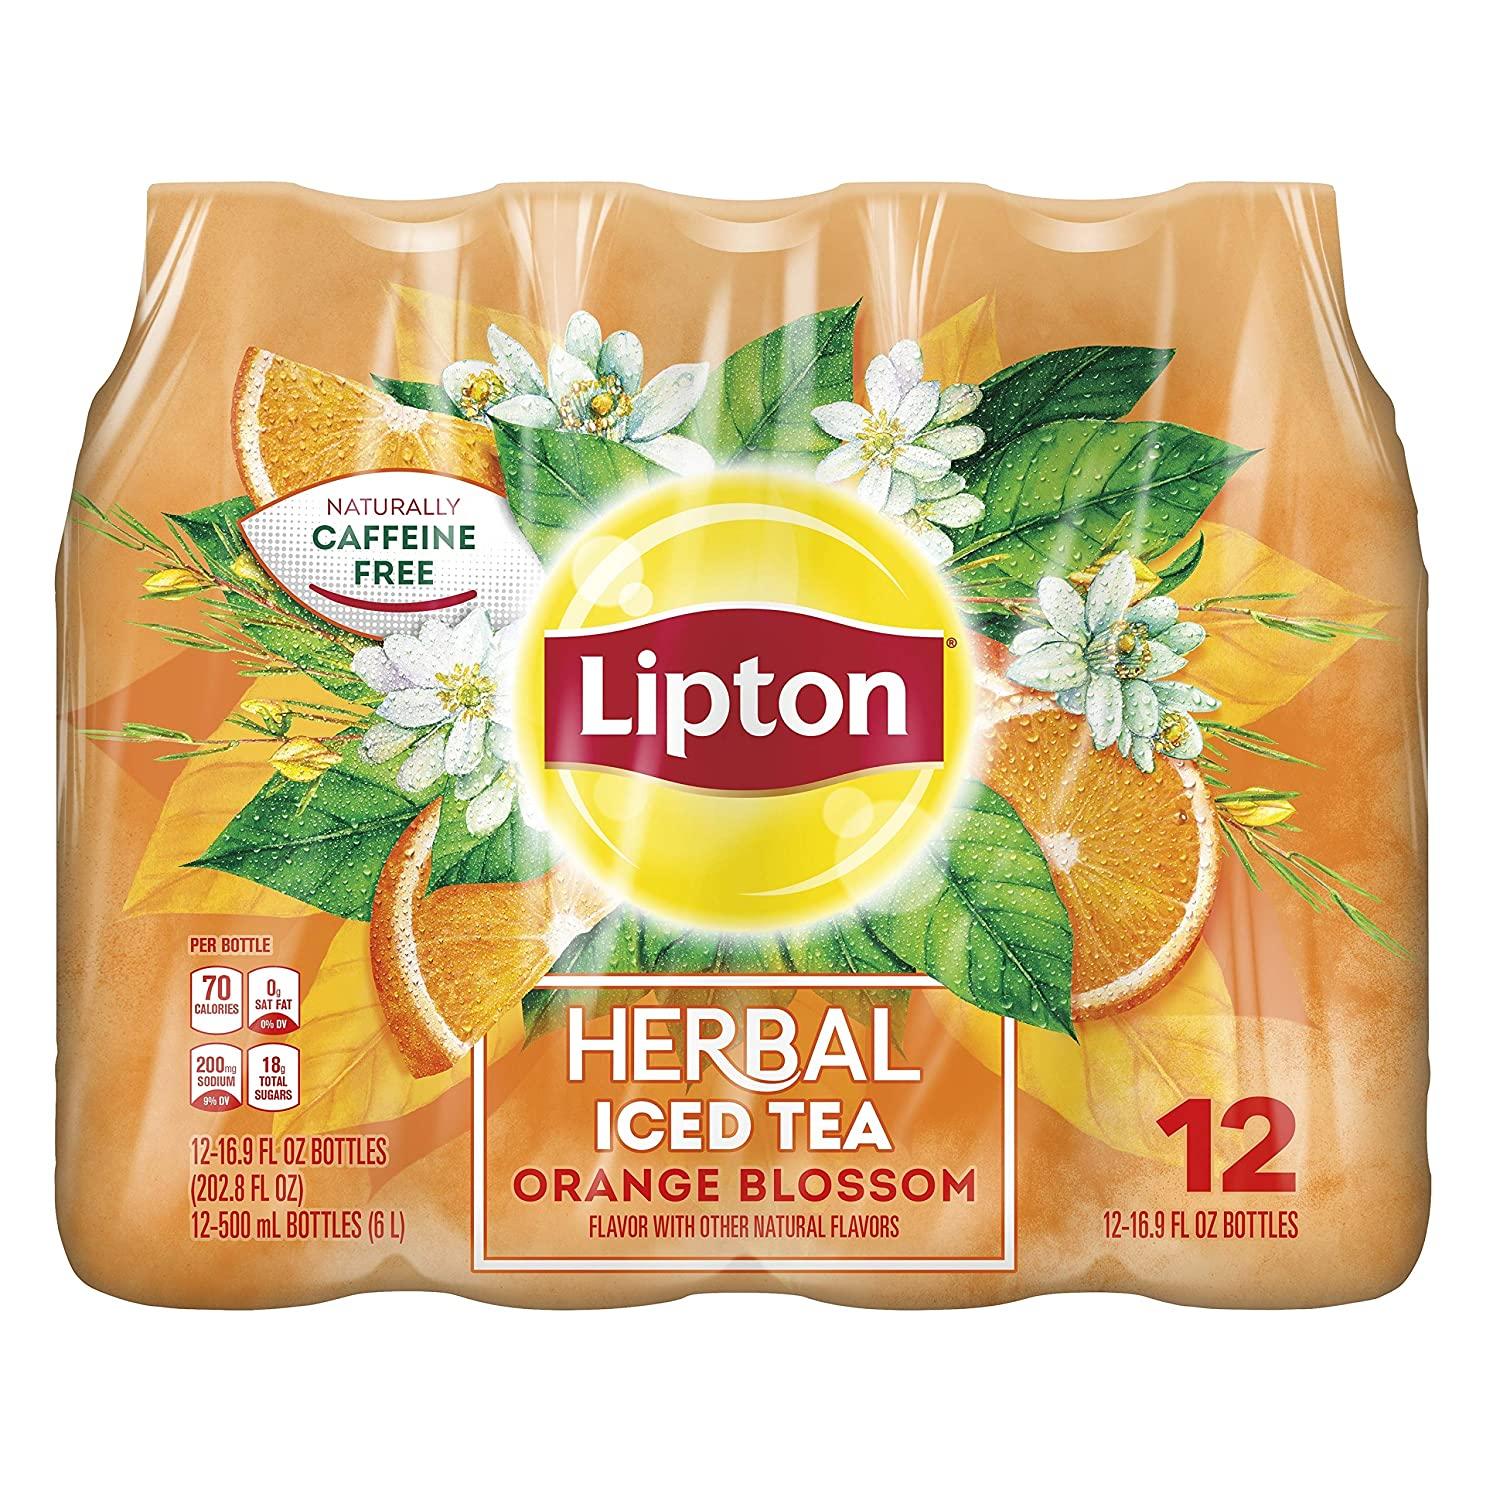 12 Lipton Herbal Iced Tea Orange Blossom Bottles for $5.29